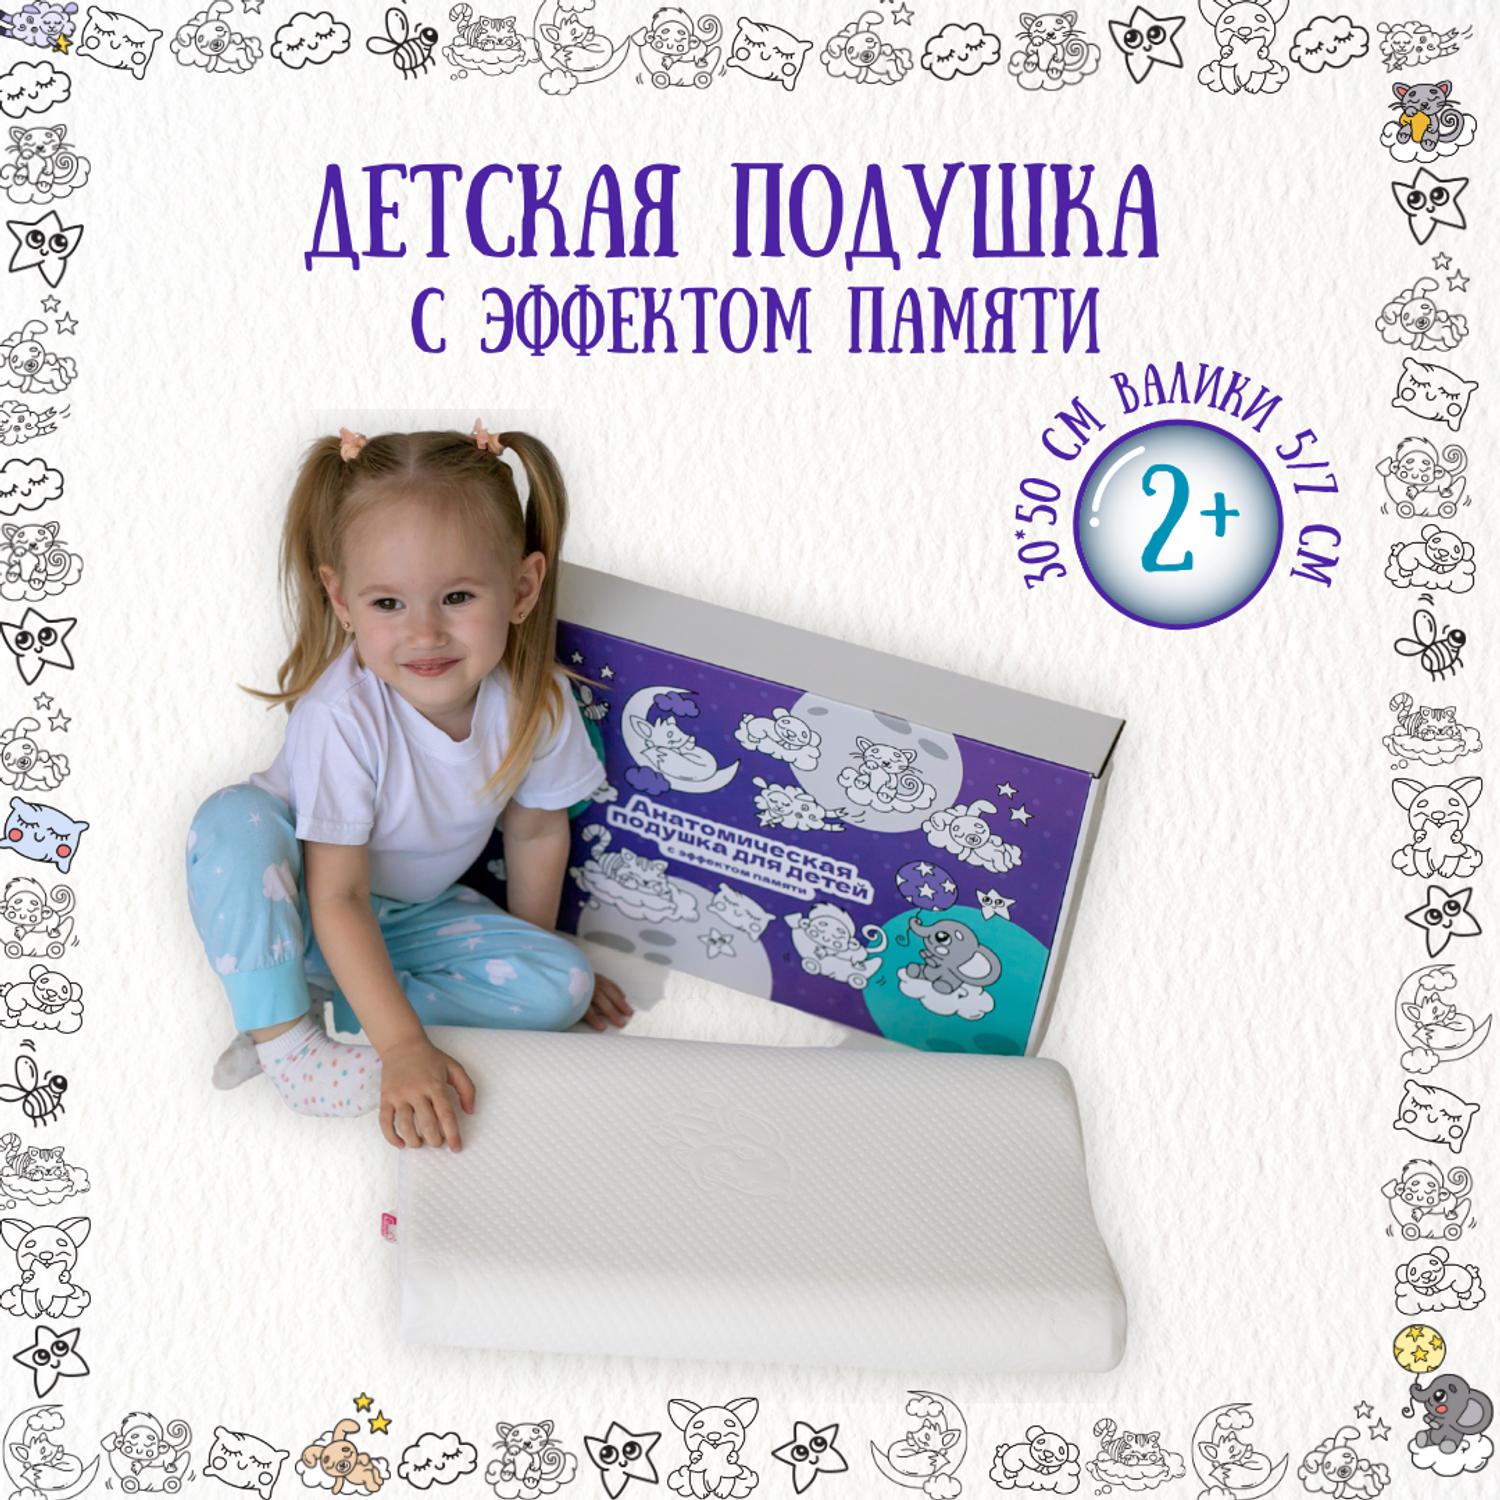 Купить Детские подушки от Togas в официальном интернет-магазине